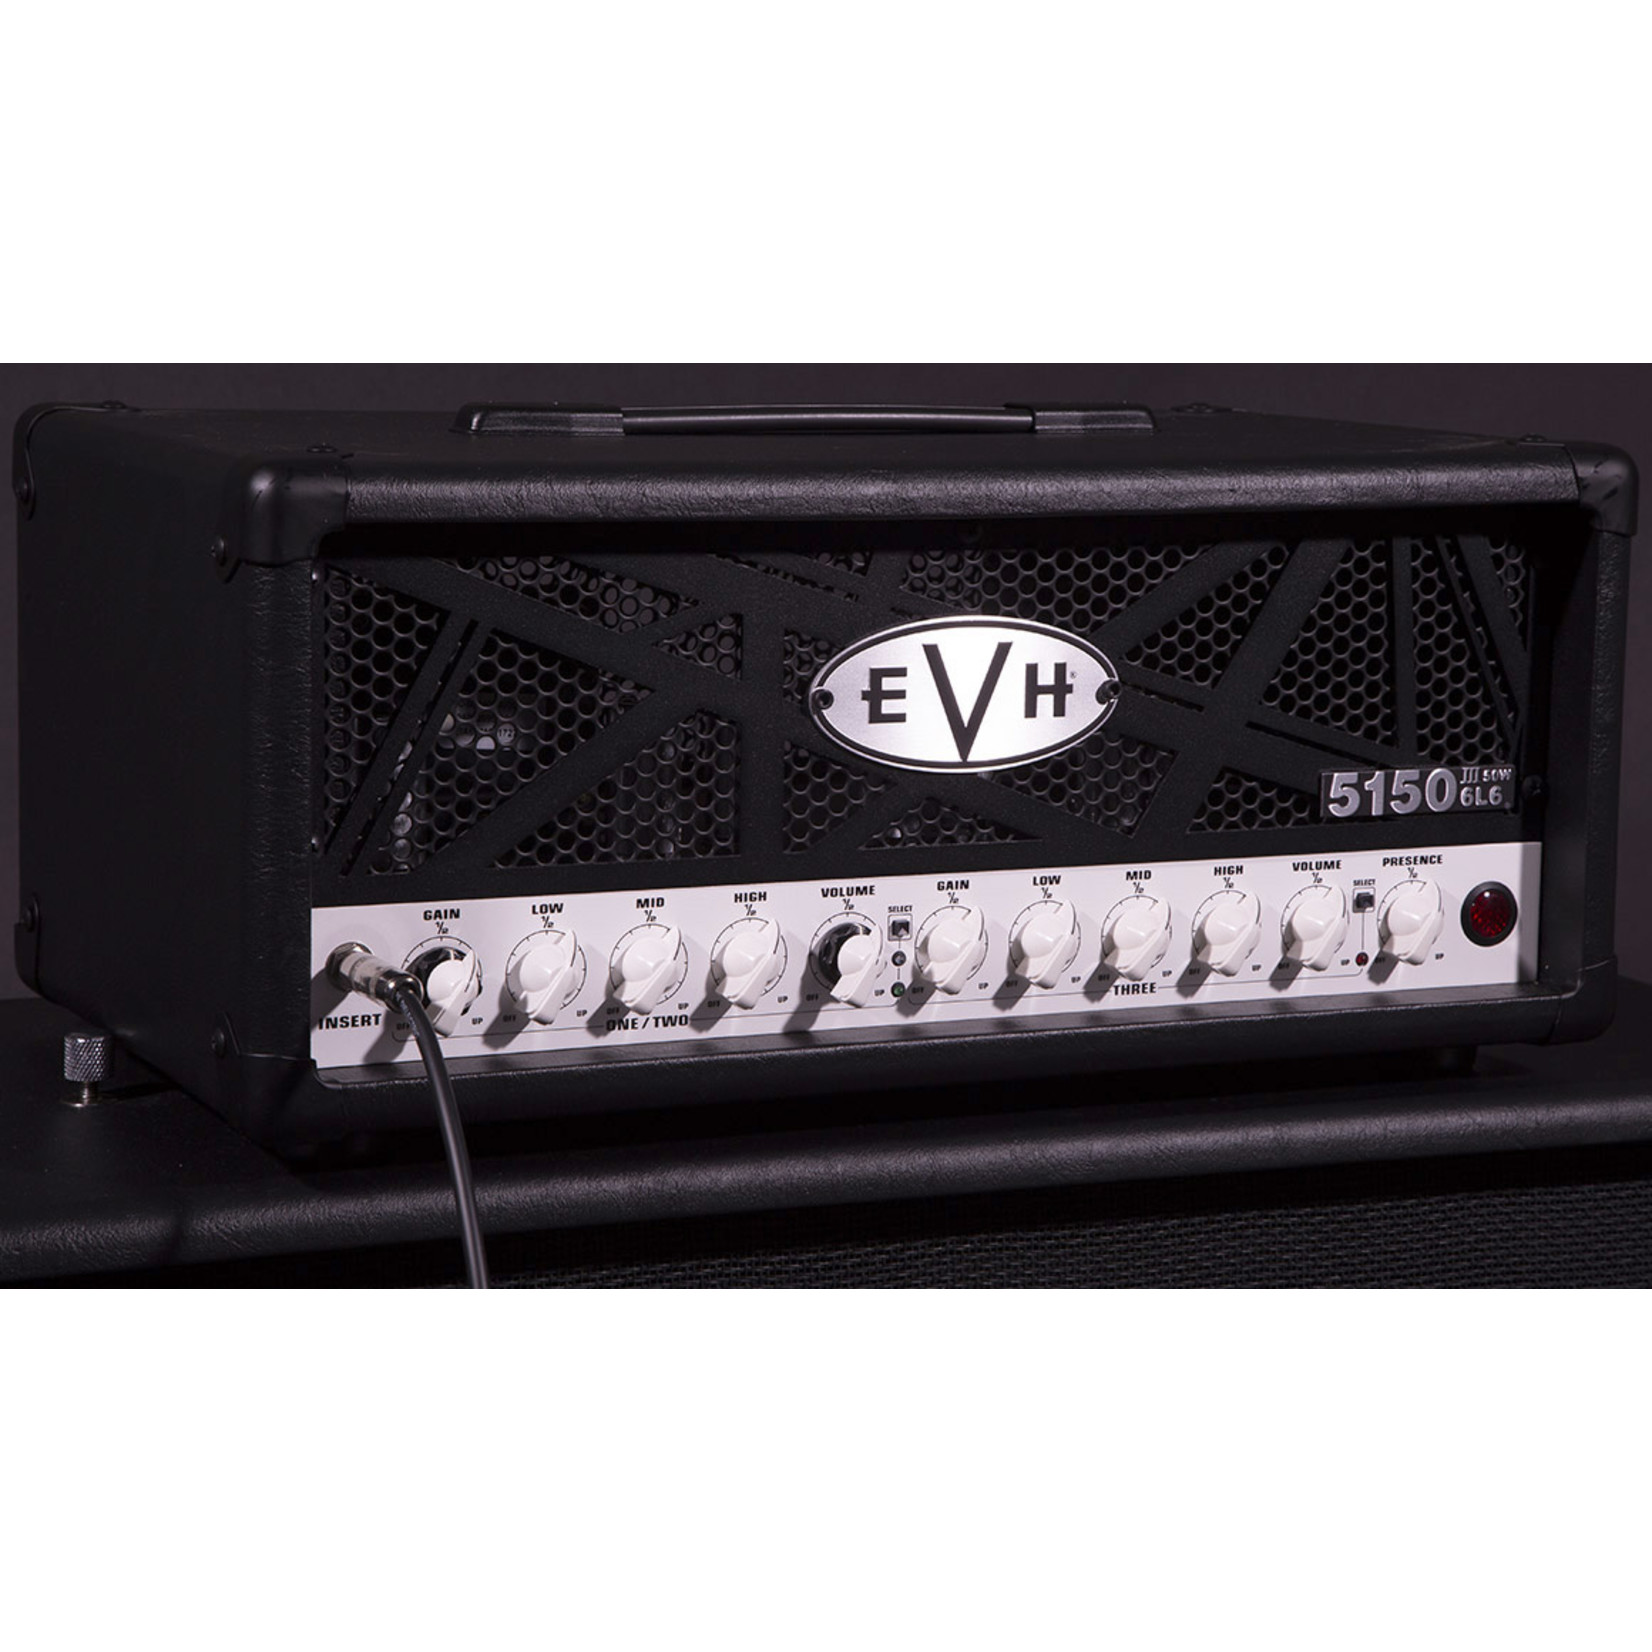 EVH EVH 5150III® 50W 6L6 Head, Black